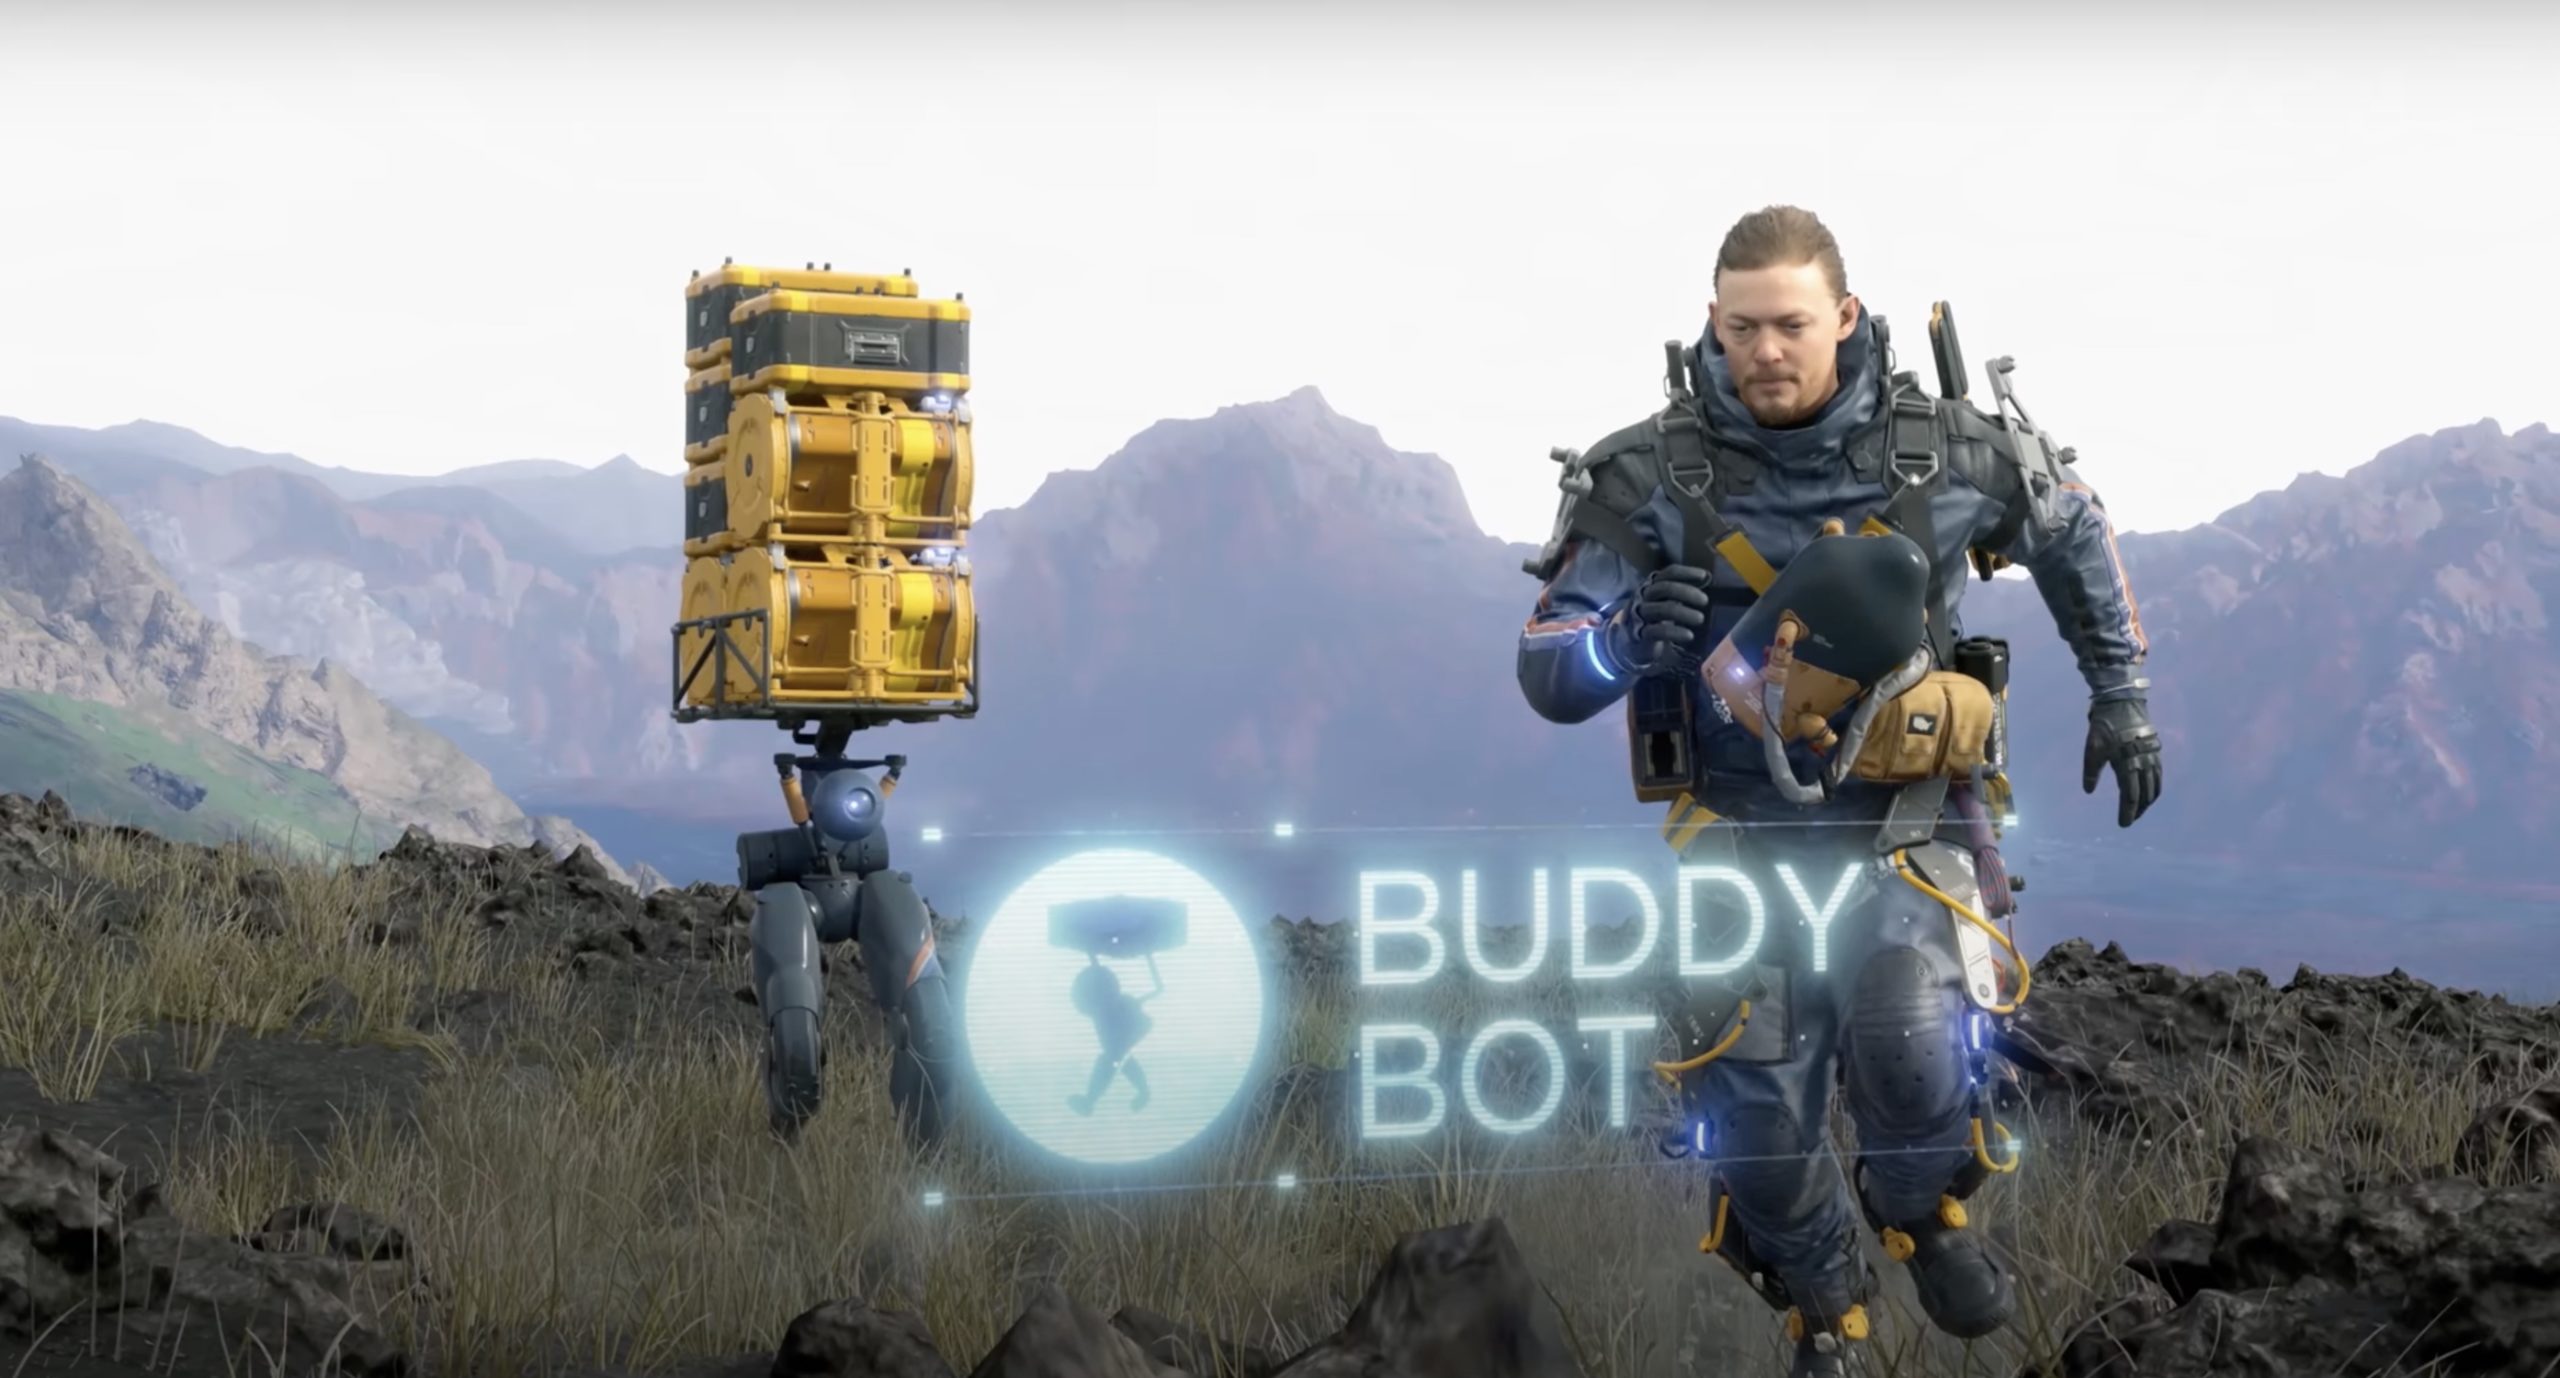 buddy bot